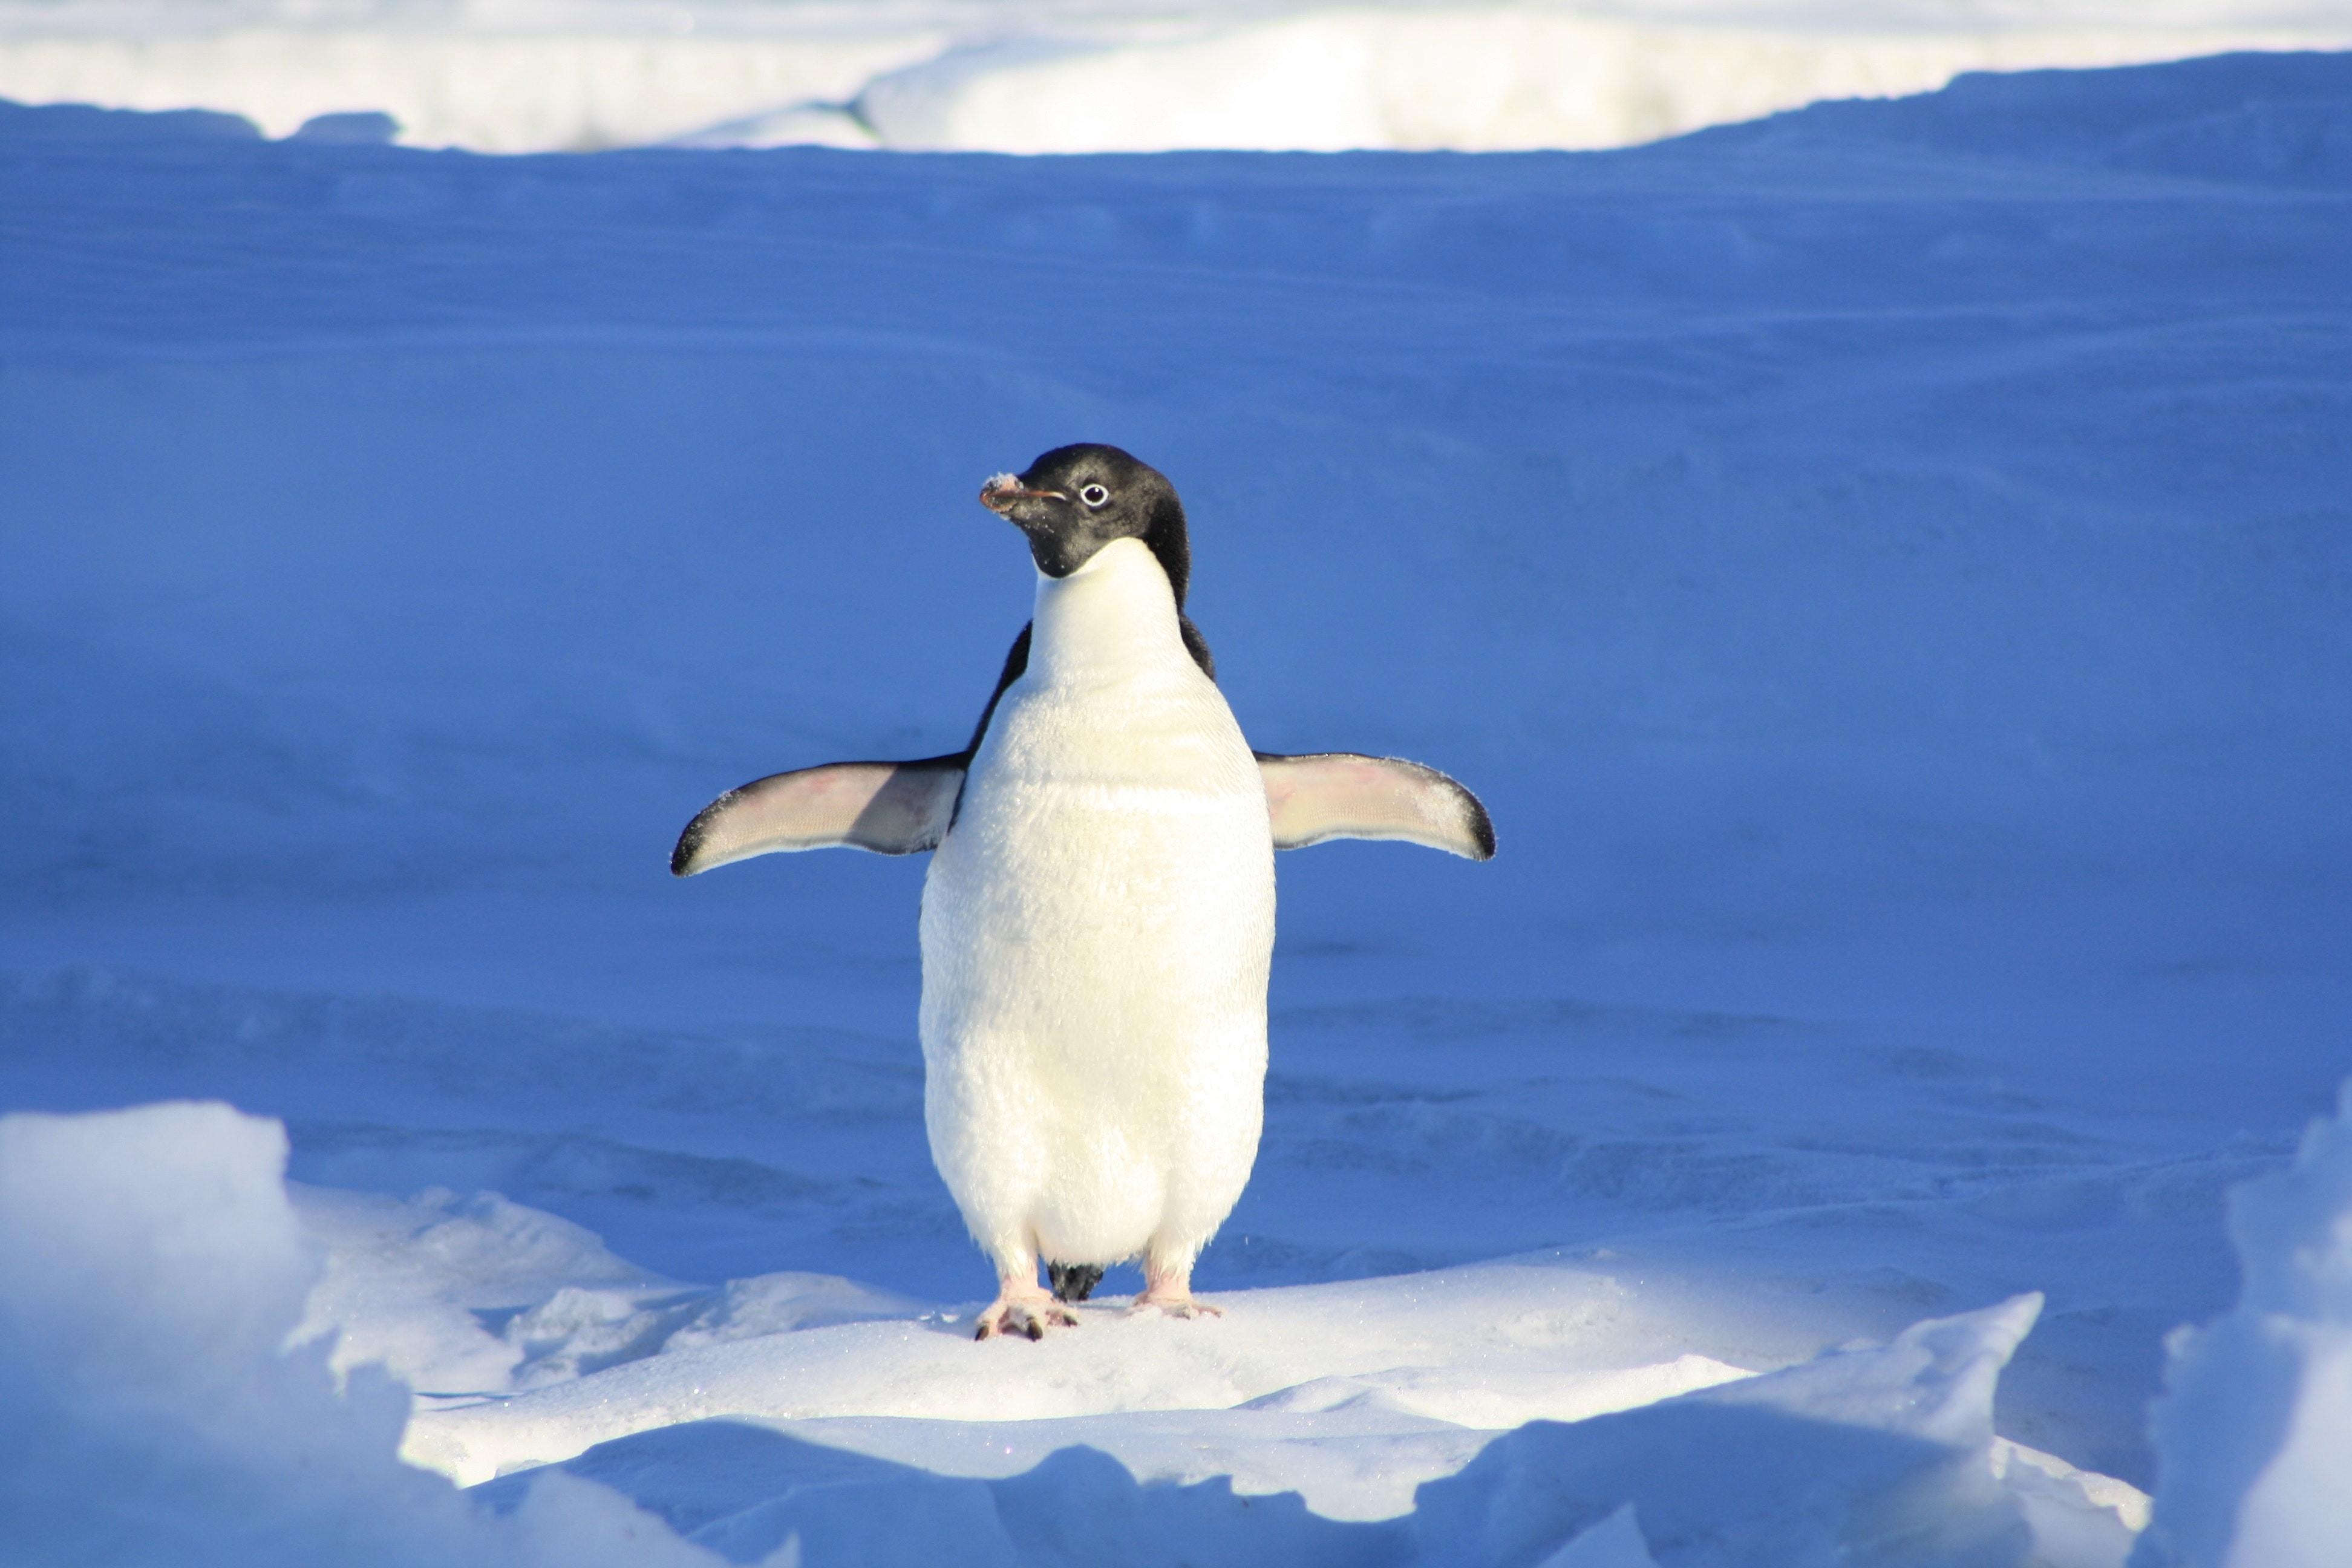 linux-penguin